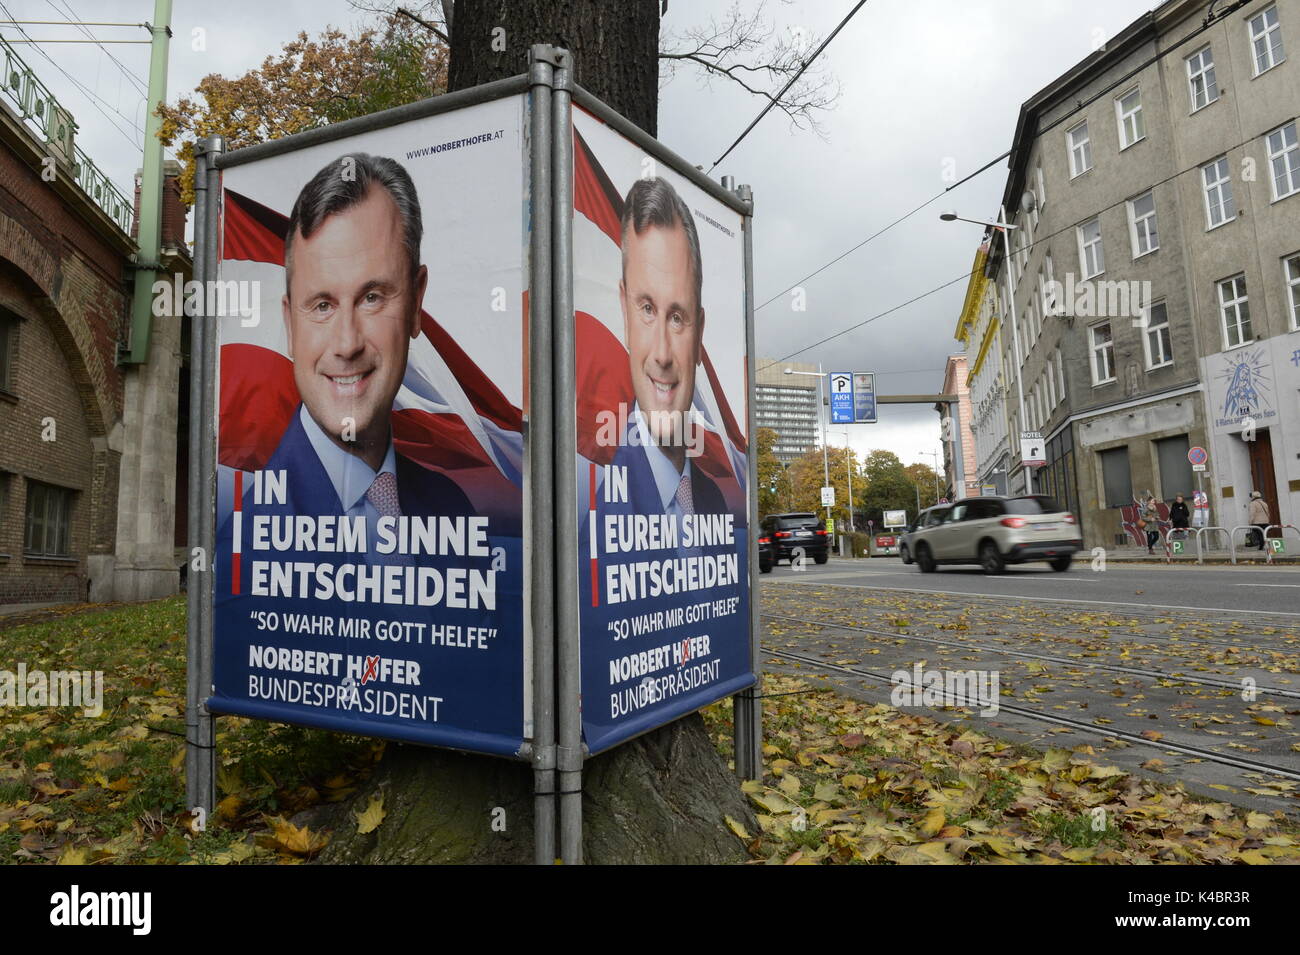 Nueva campaña de carteles para la elección presidencial Federal el 4 de diciembre en Austria, Norbert Hofer Foto de stock